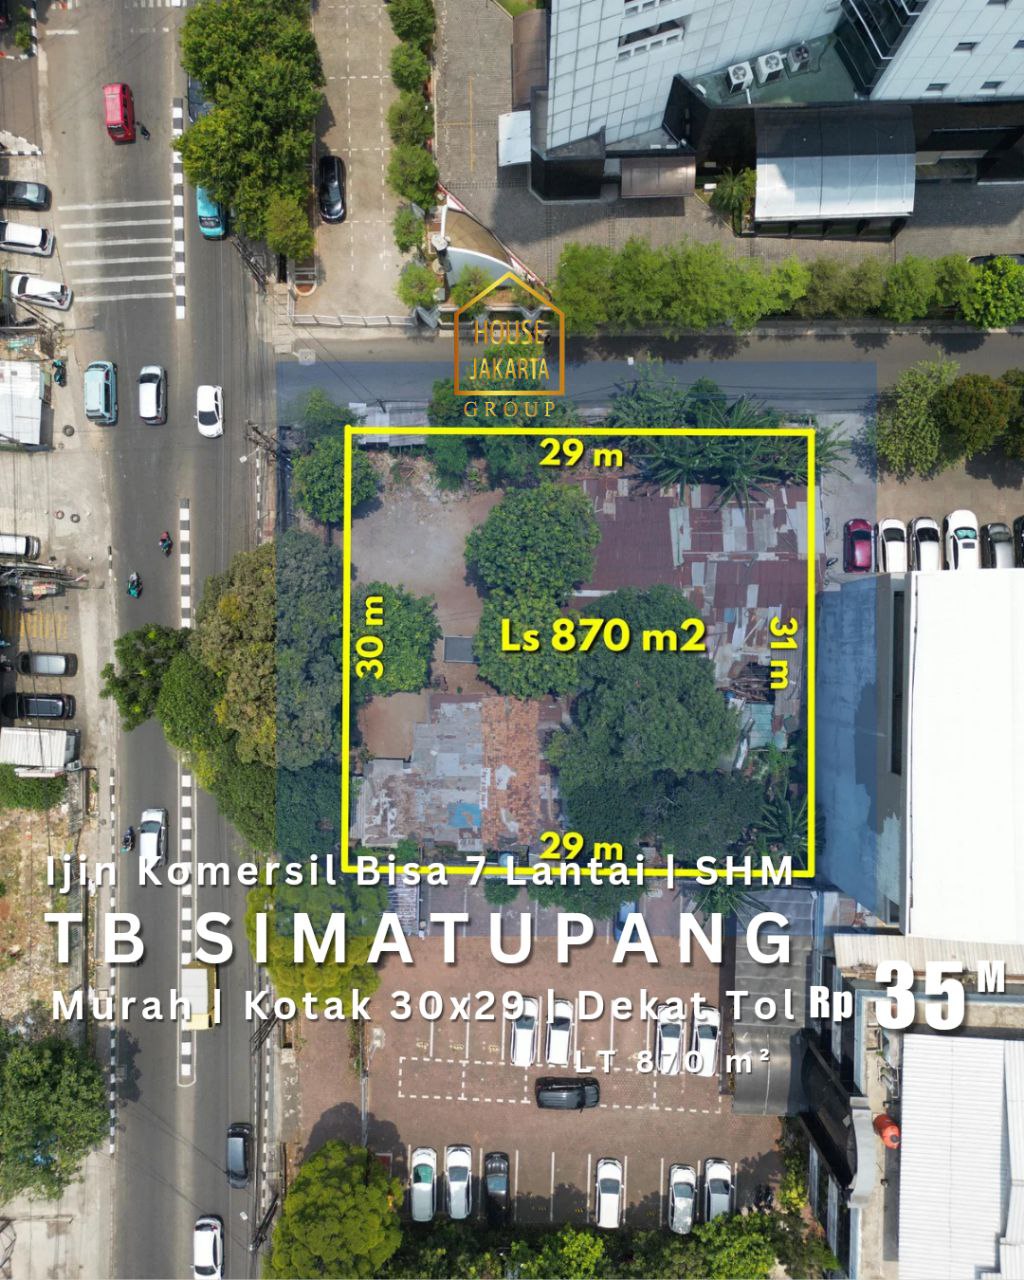  Tanah Komersial Tb Simatupang Ijin Bisa 7 Lantai •  Murah • Kotak 30 m x 29 m • Dekat Tol